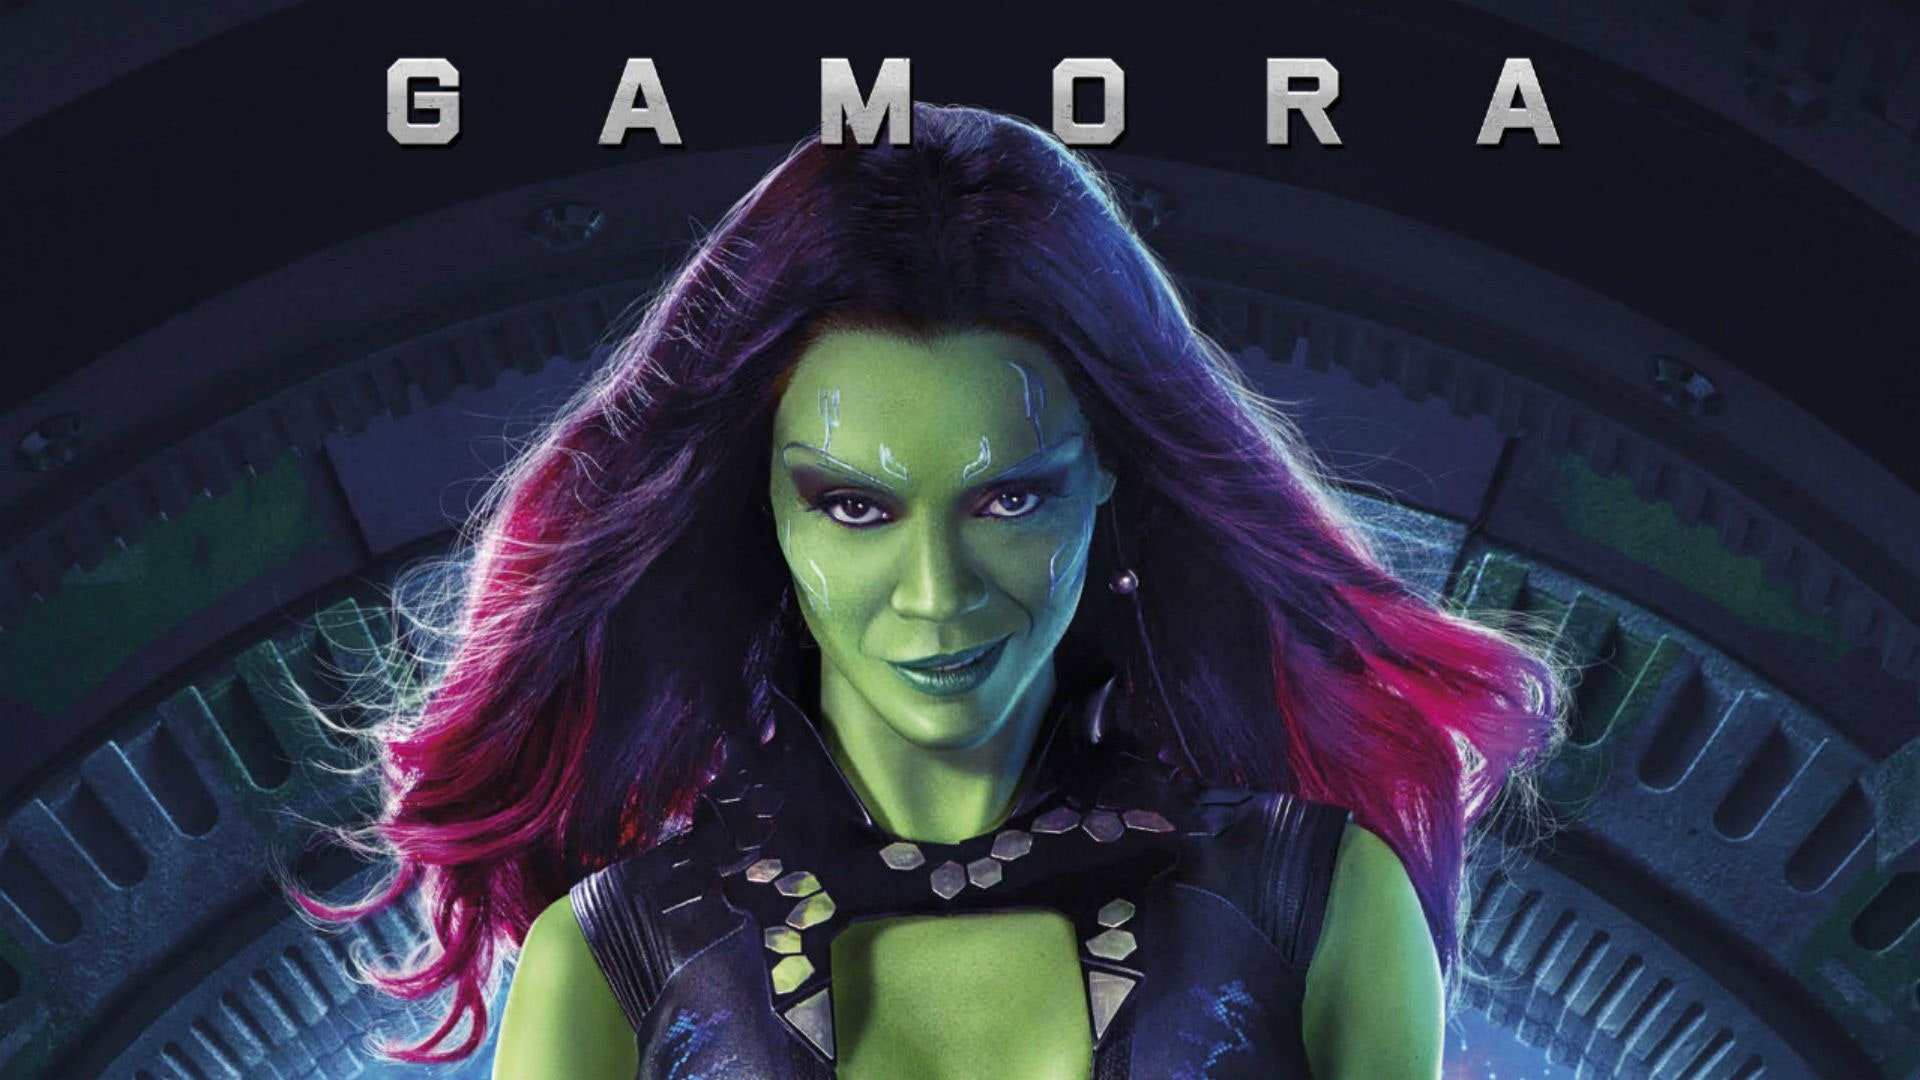 Zoe Saldana on kicking ass as Gamora